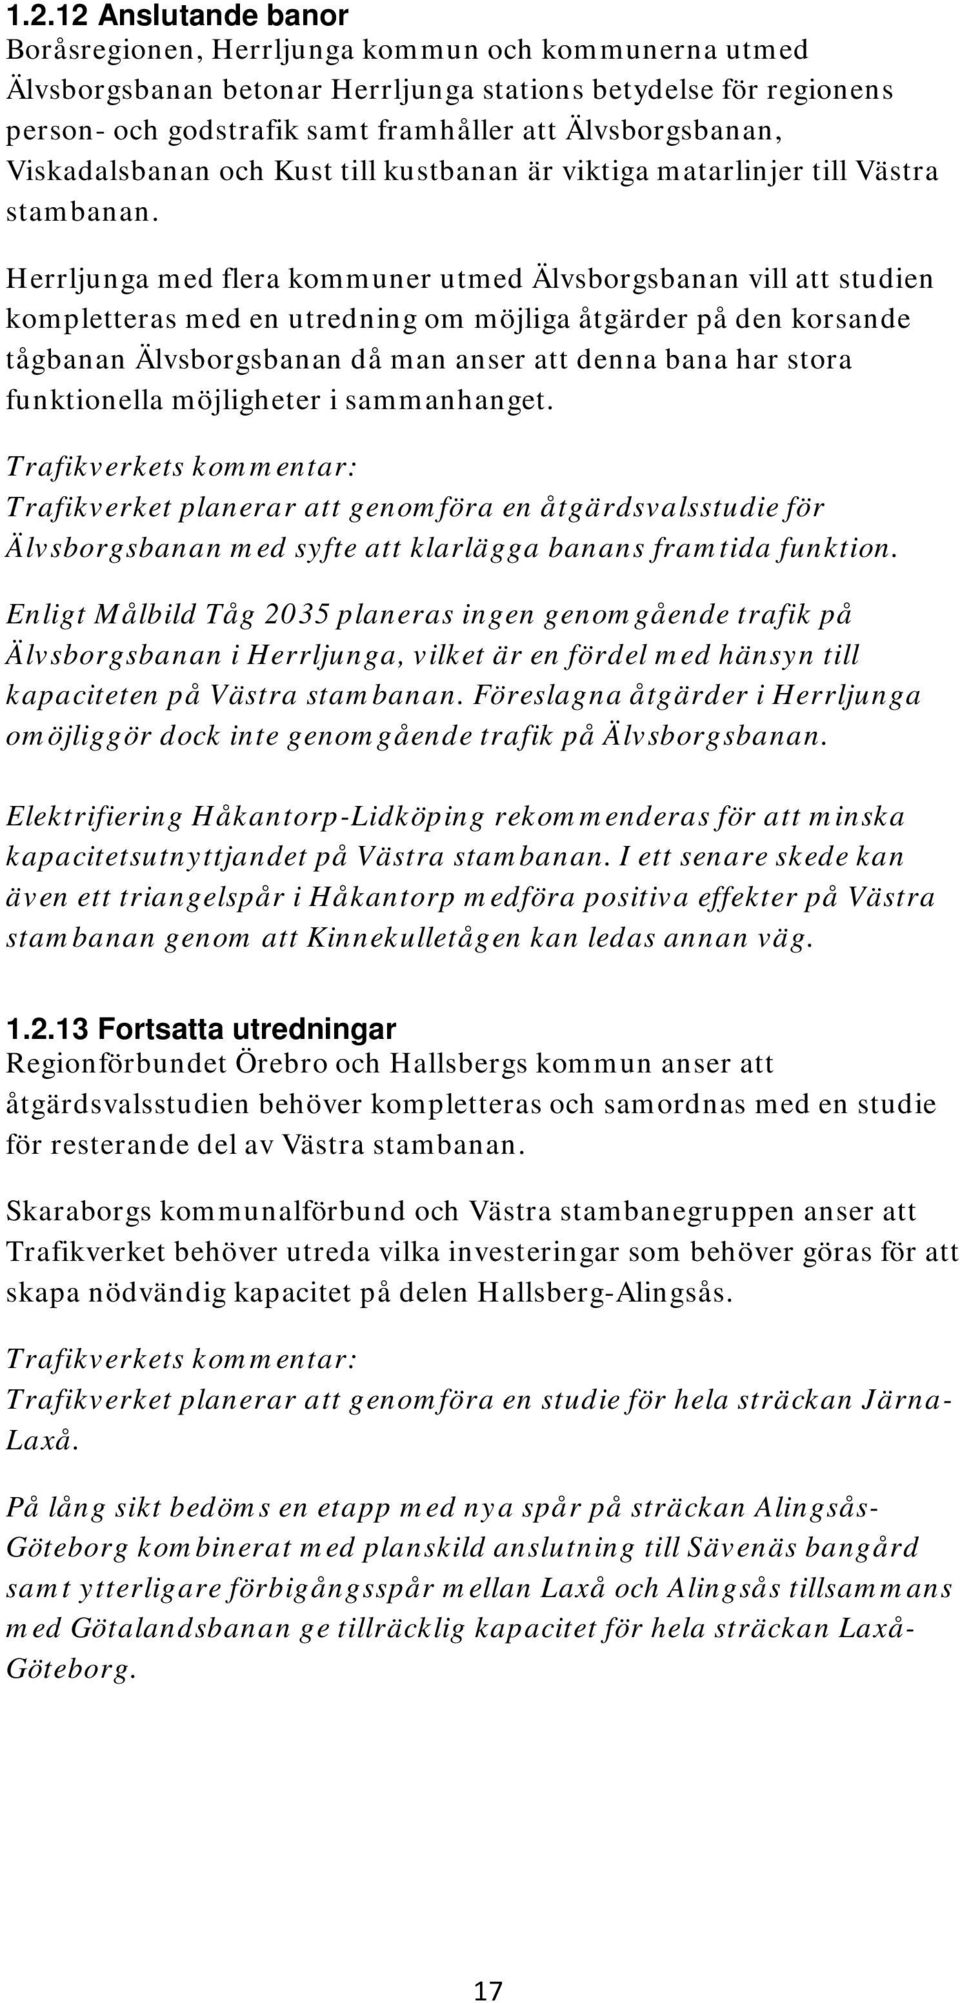 Herrljunga med flera kommuner utmed Älvsborgsbanan vill att studien kompletteras med en utredning om möjliga åtgärder på den korsande tågbanan Älvsborgsbanan då man anser att denna bana har stora